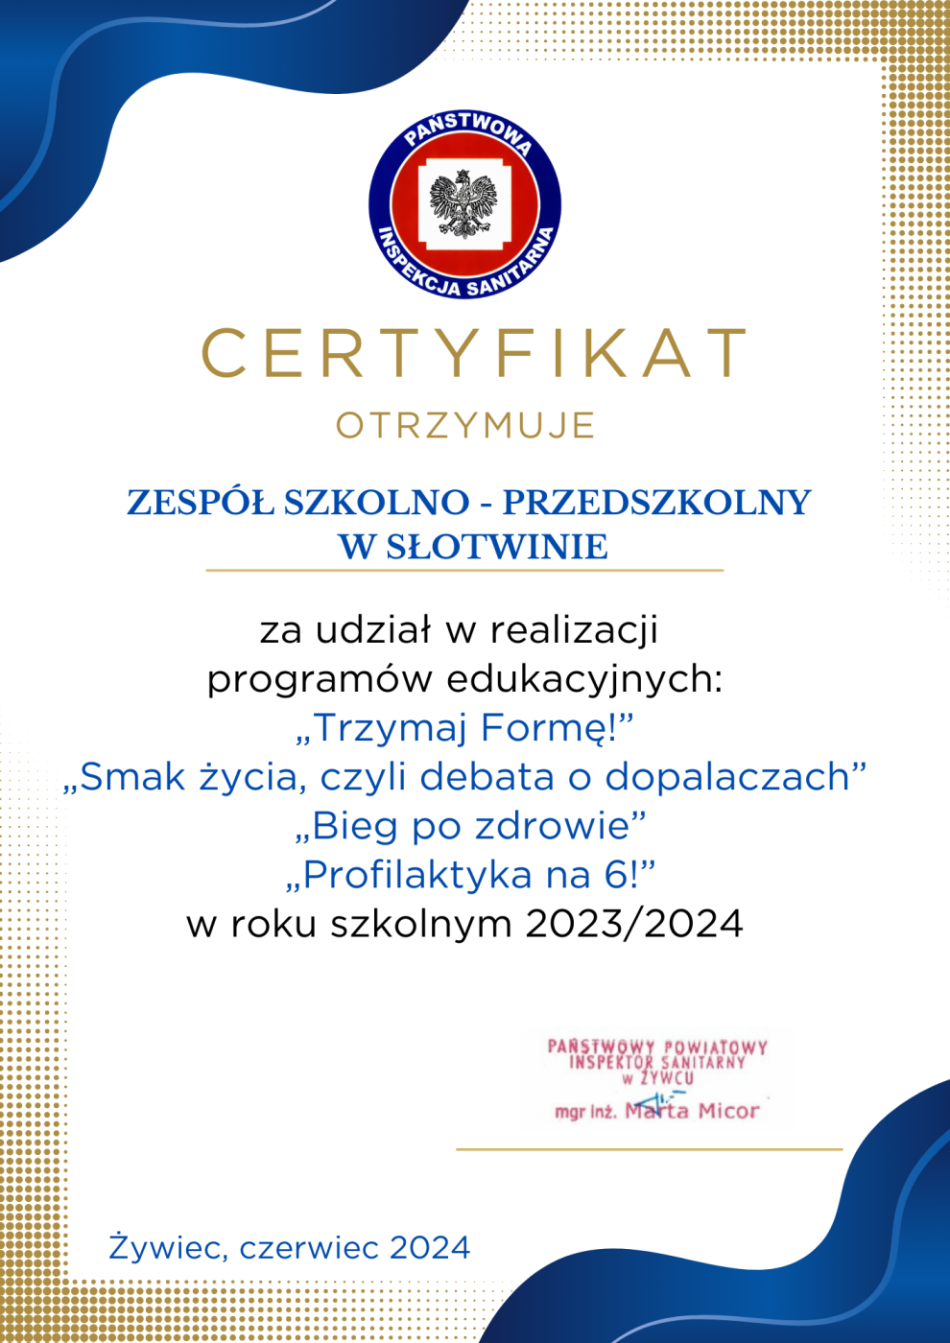 Certyfikat uczestnictwa w programach Państwowej Inspekcji Sanitarnej